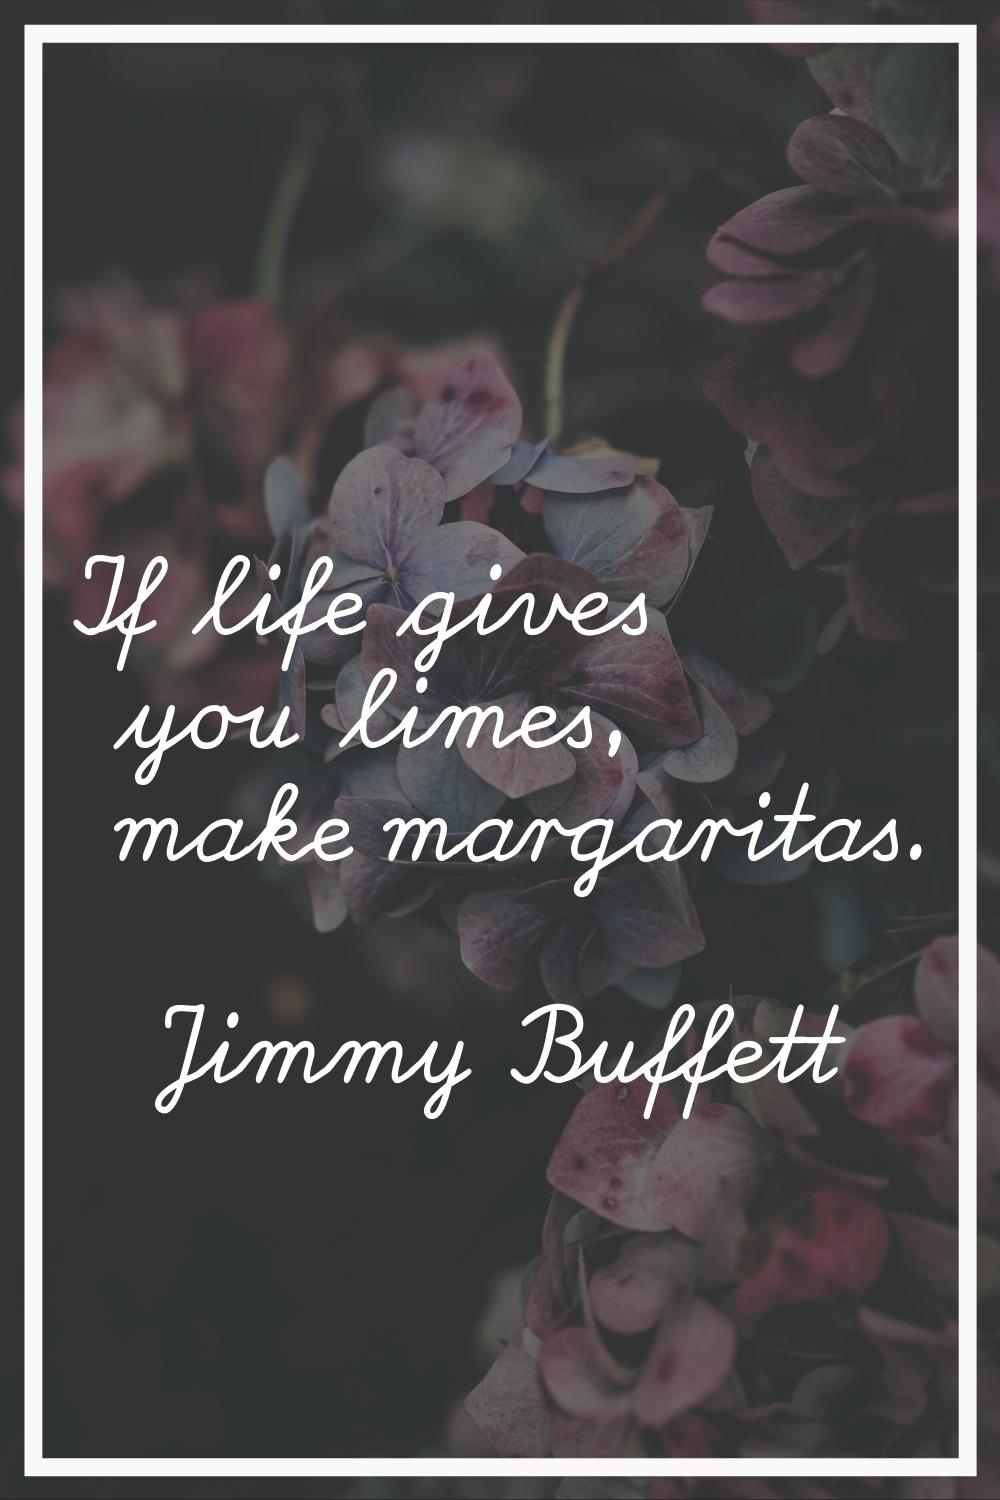 If life gives you limes, make margaritas.